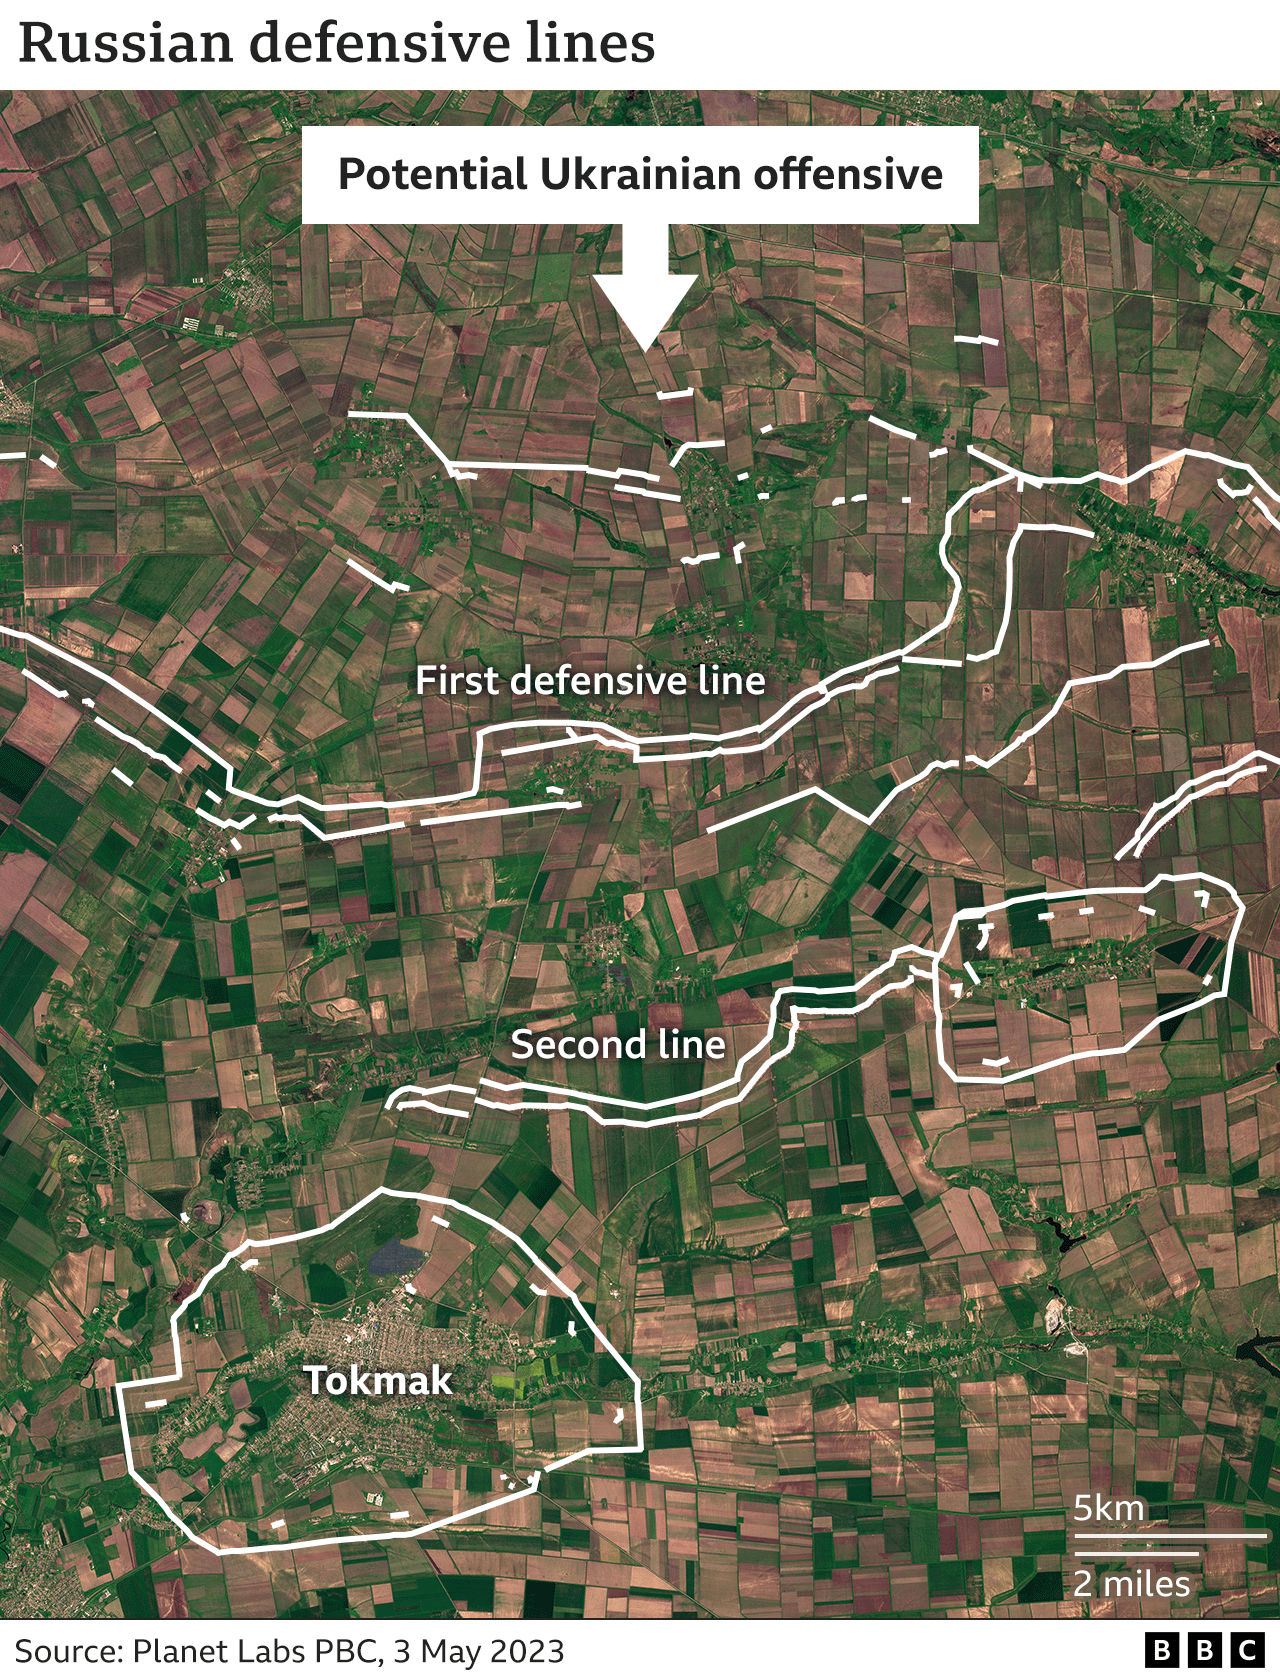 Δορυφορική εικόνα του Tokmak με επικαλύψεις που τονίζουν δύο γραμμές χαρακωμάτων και έναν δακτύλιο περαιτέρω άμυνας γύρω από την πόλη